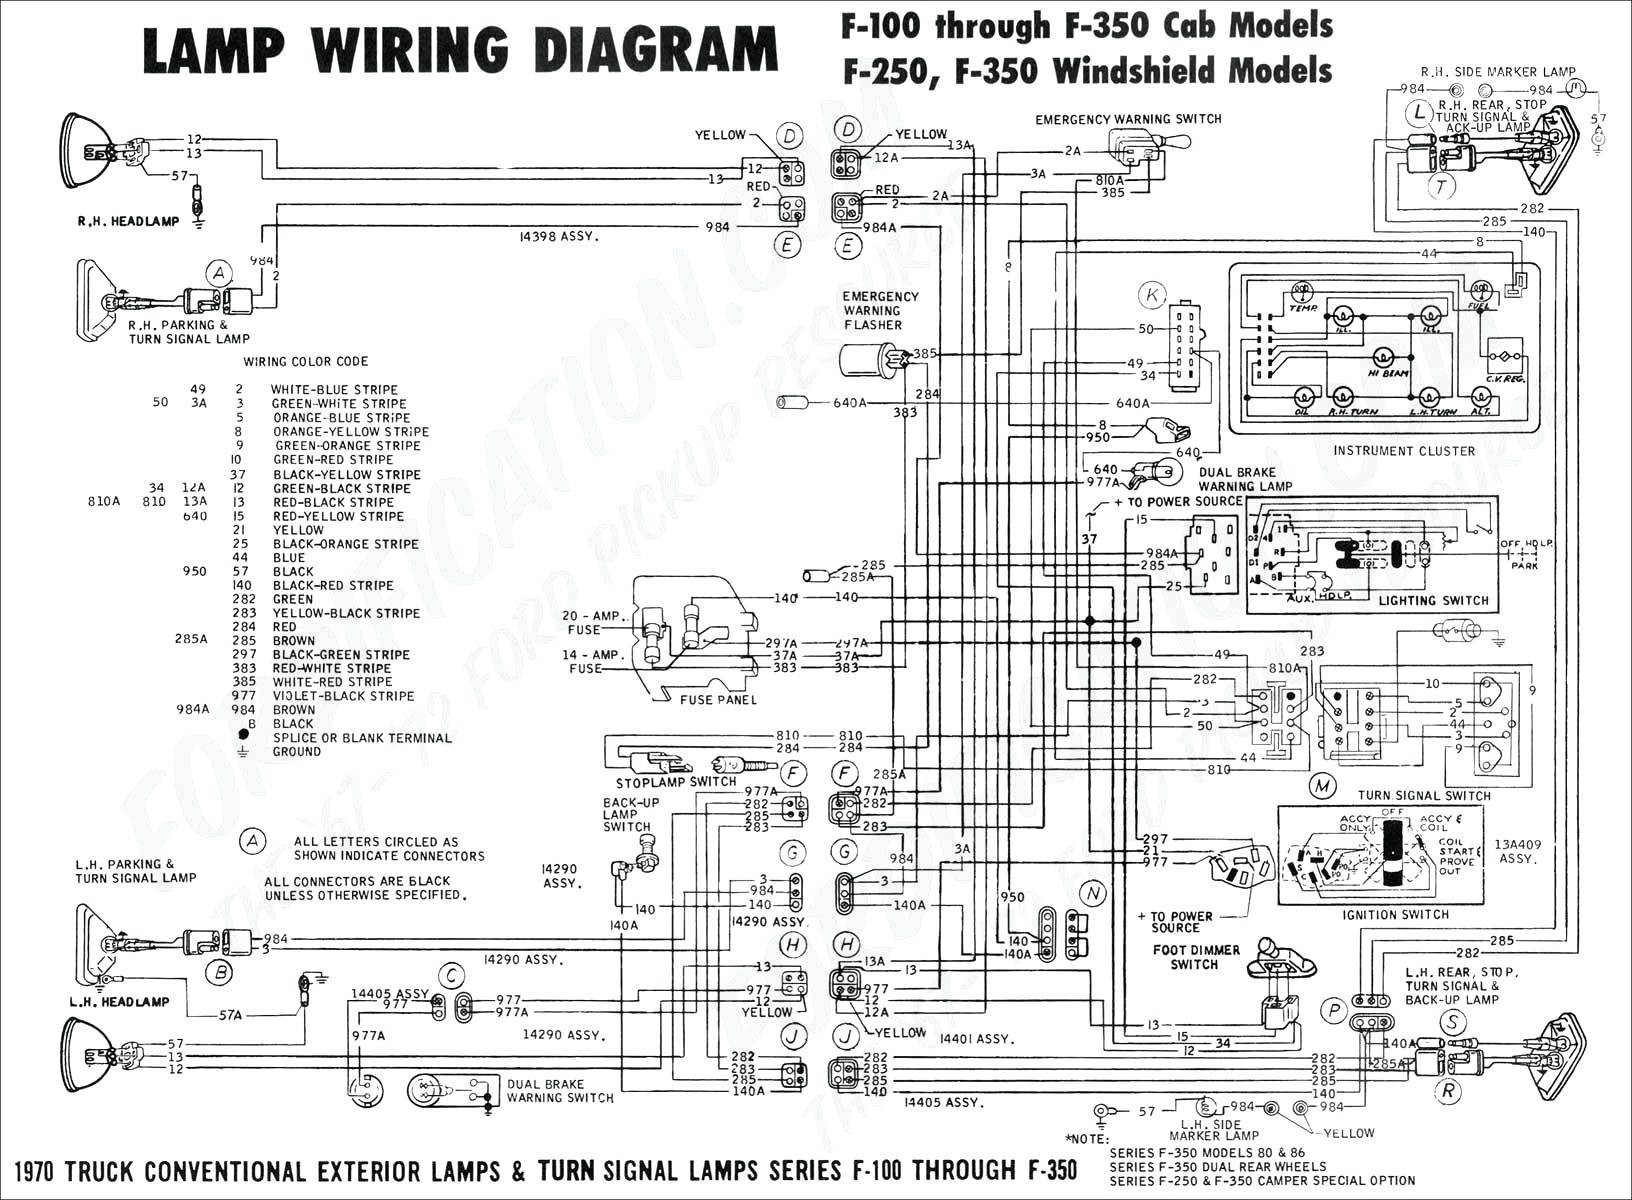 2004 Vw Jetta Engine Diagram 2002 Volkswagen Jetta Engine Diagram Wiring Diagram Used Of 2004 Vw Jetta Engine Diagram